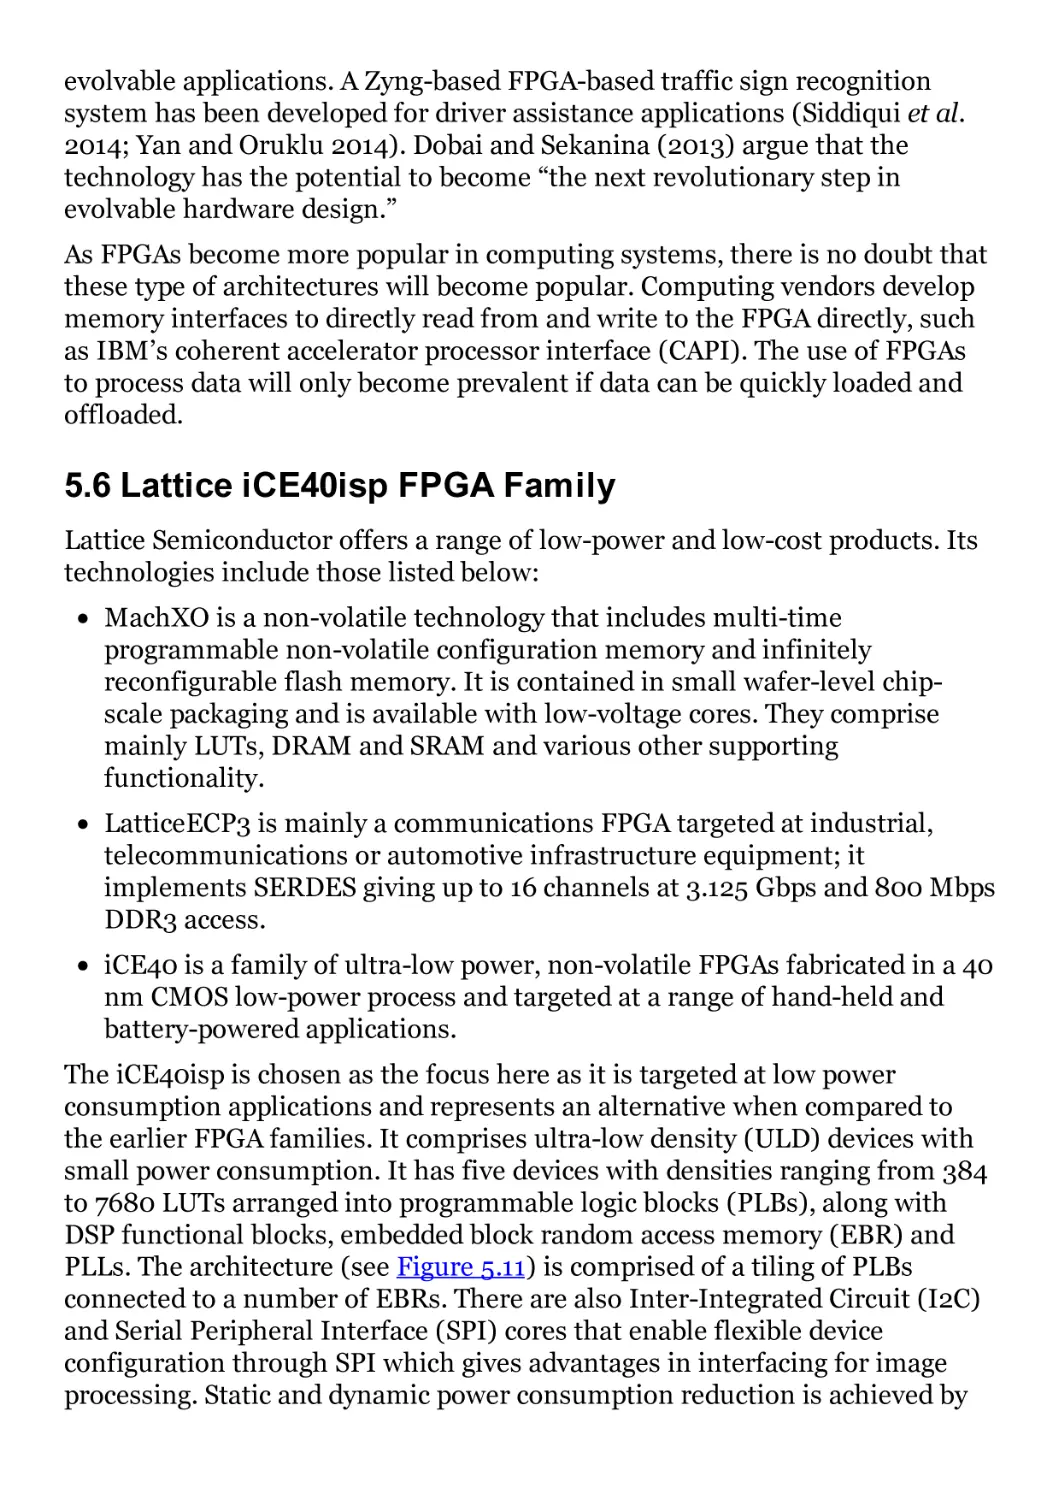 5.6 Lattice iCE40isp FPGA Family